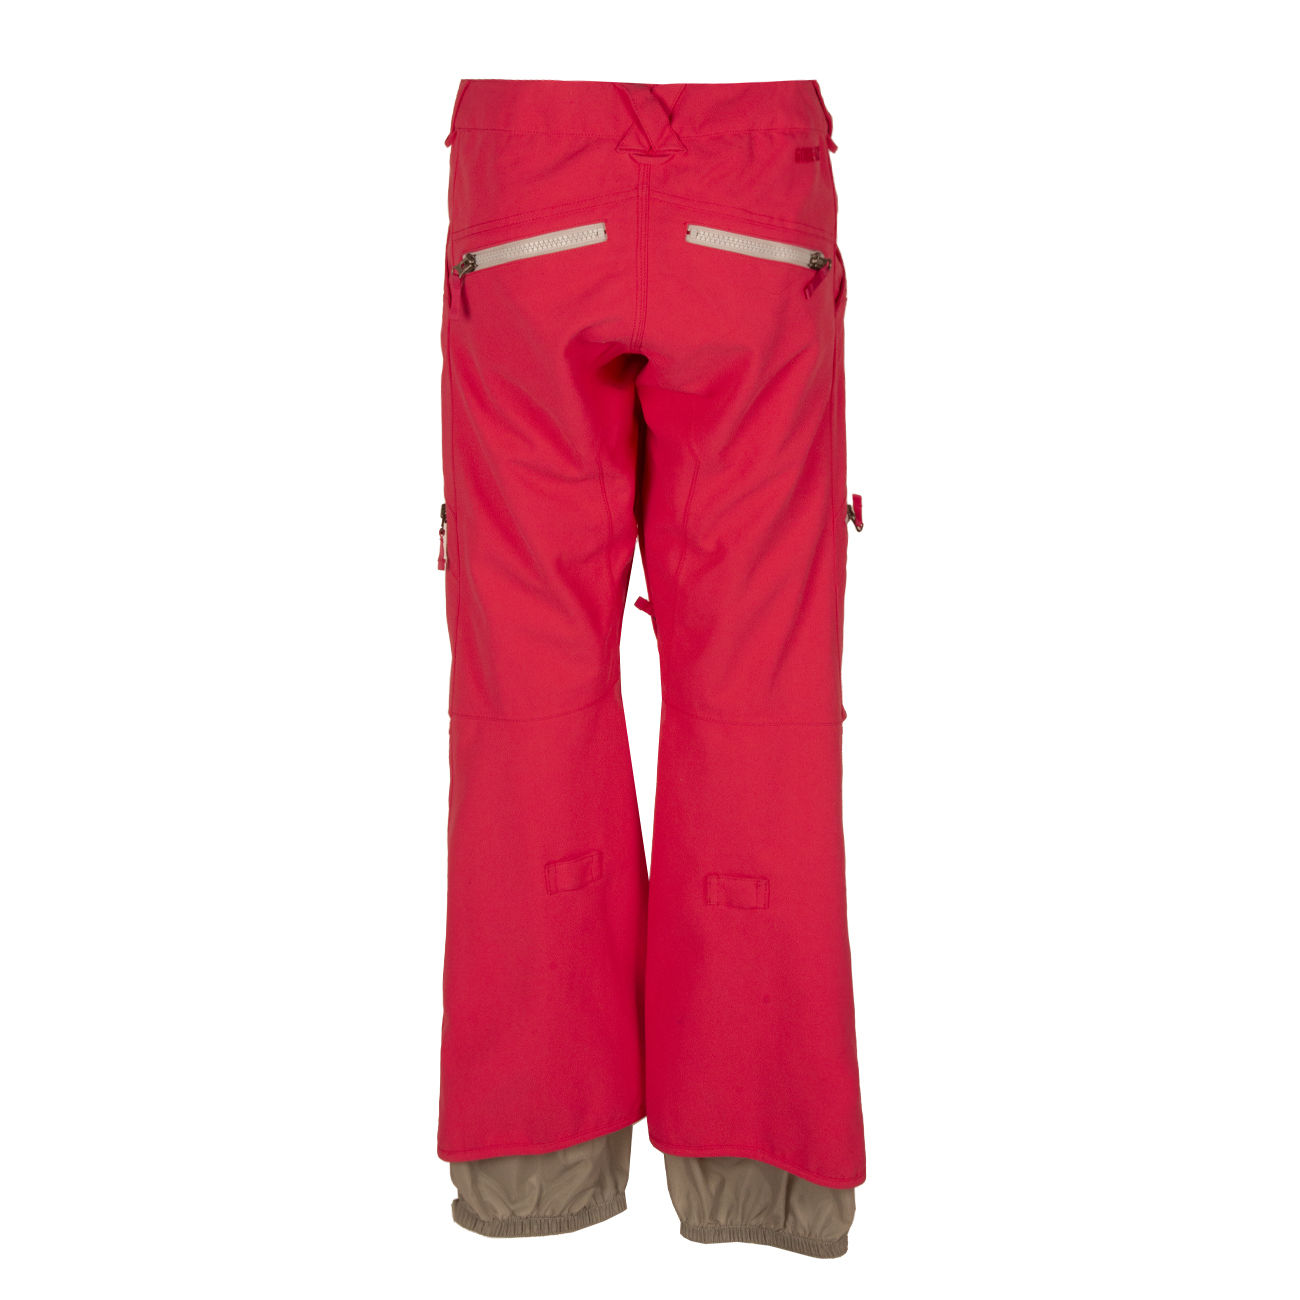 NORRONA 3317-11 Falketind Flex1 Trousers Women's LARGE Softshell Zipper |  eBay